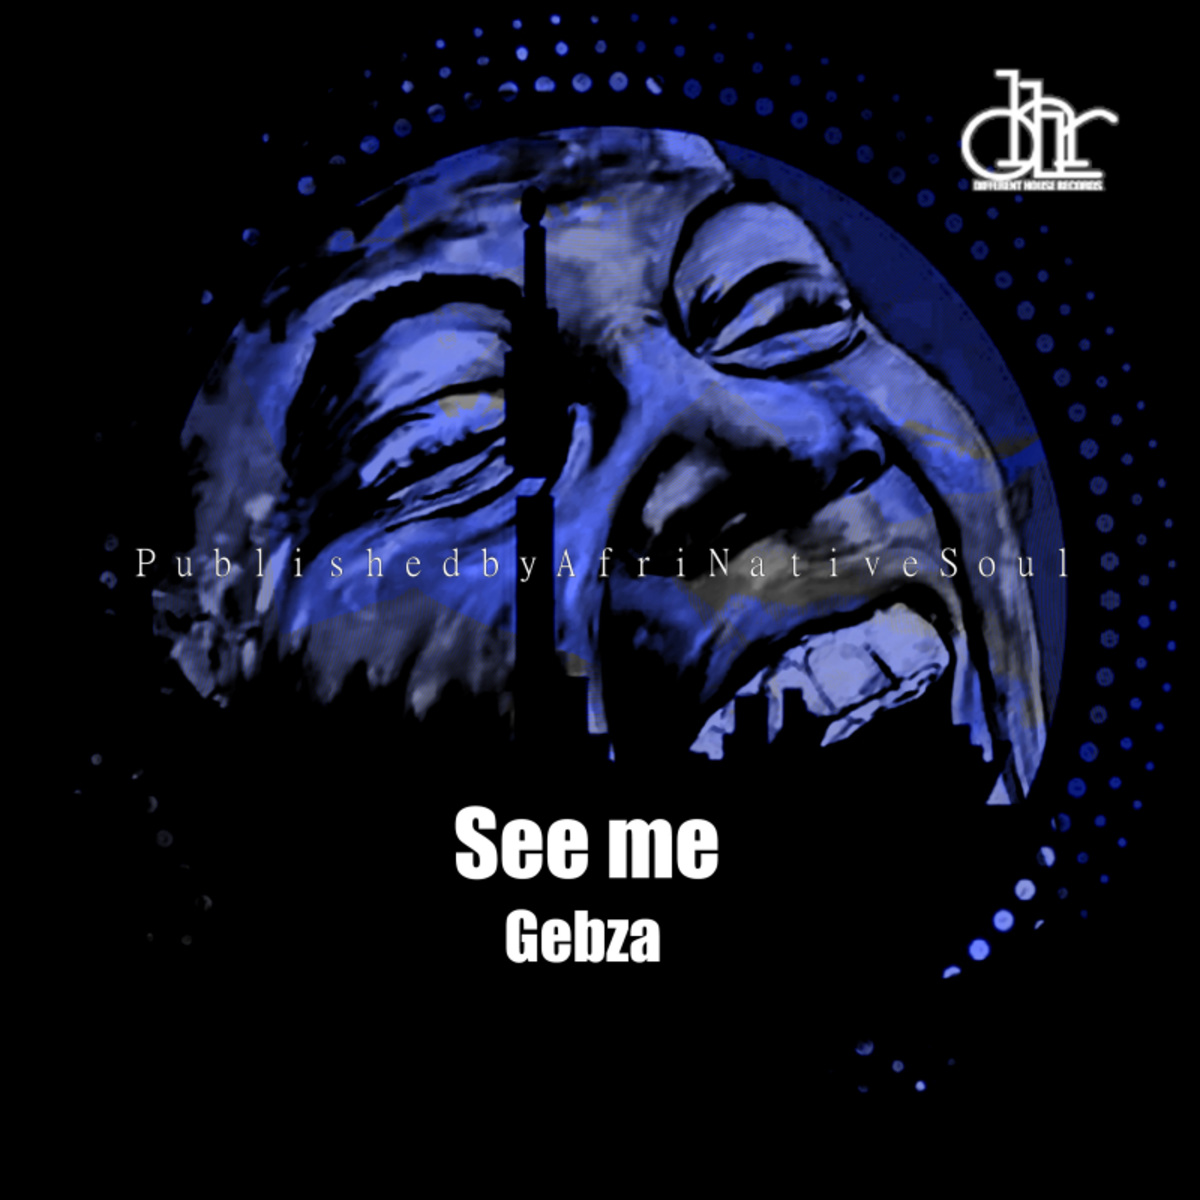 Gebza - See me / DH SOUL CLAP INC.